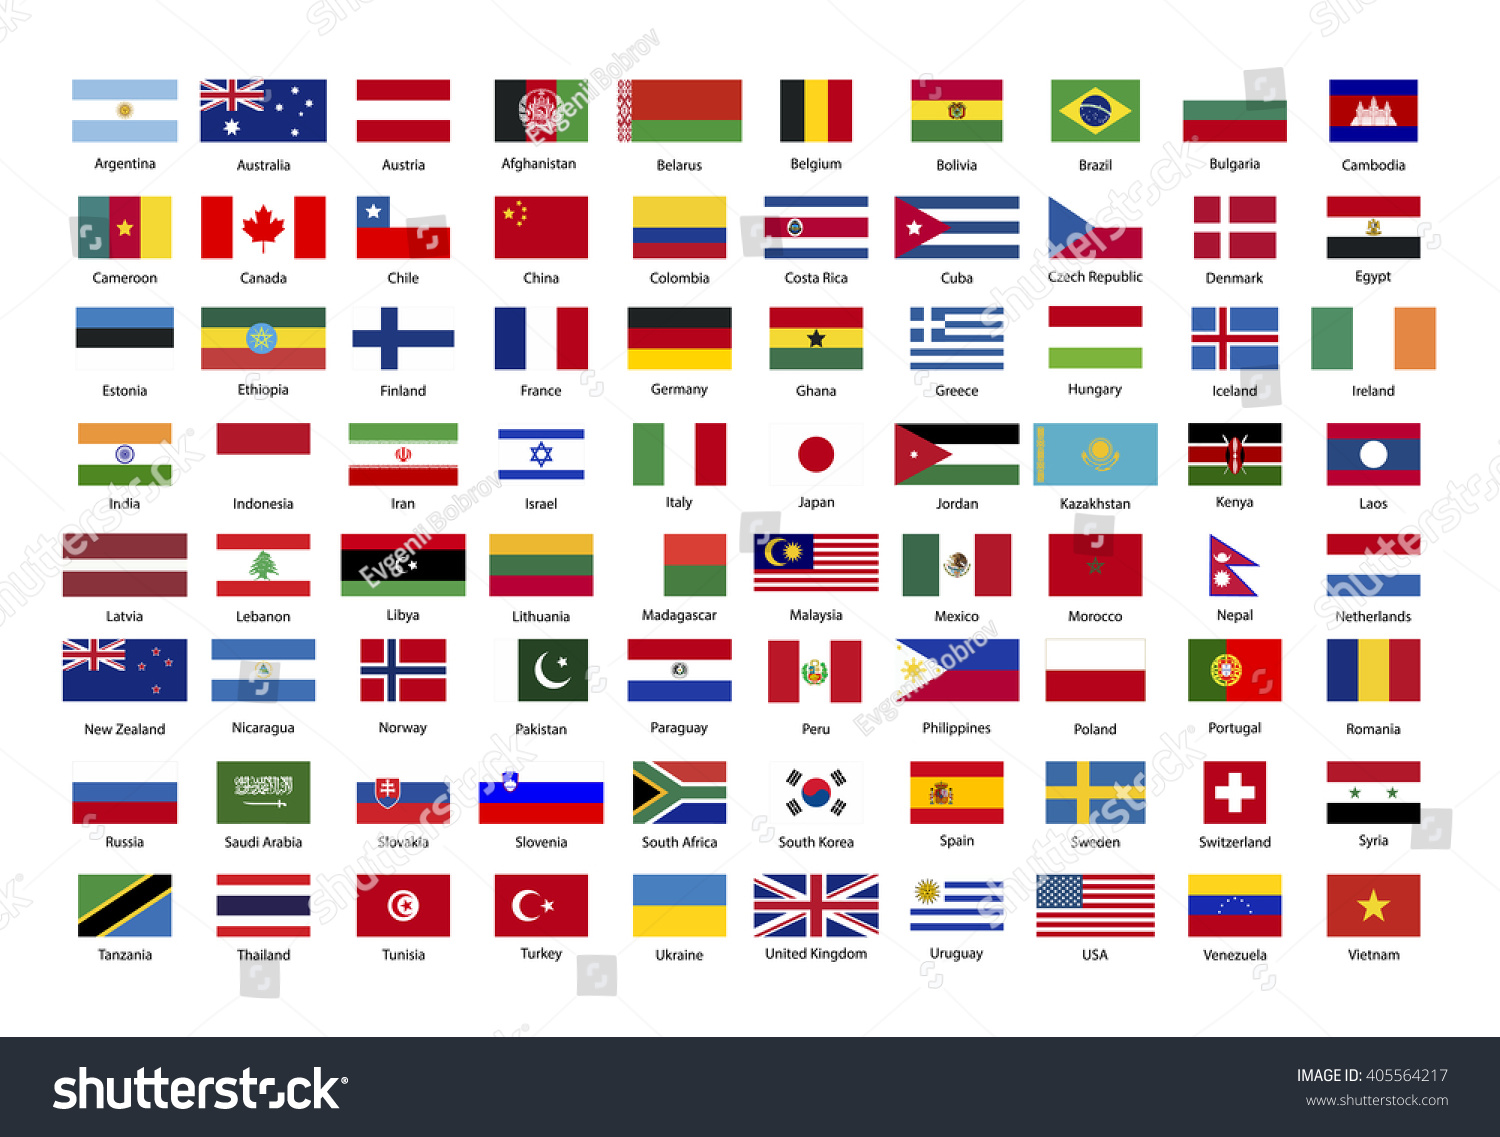 Названия стран и их названия фото